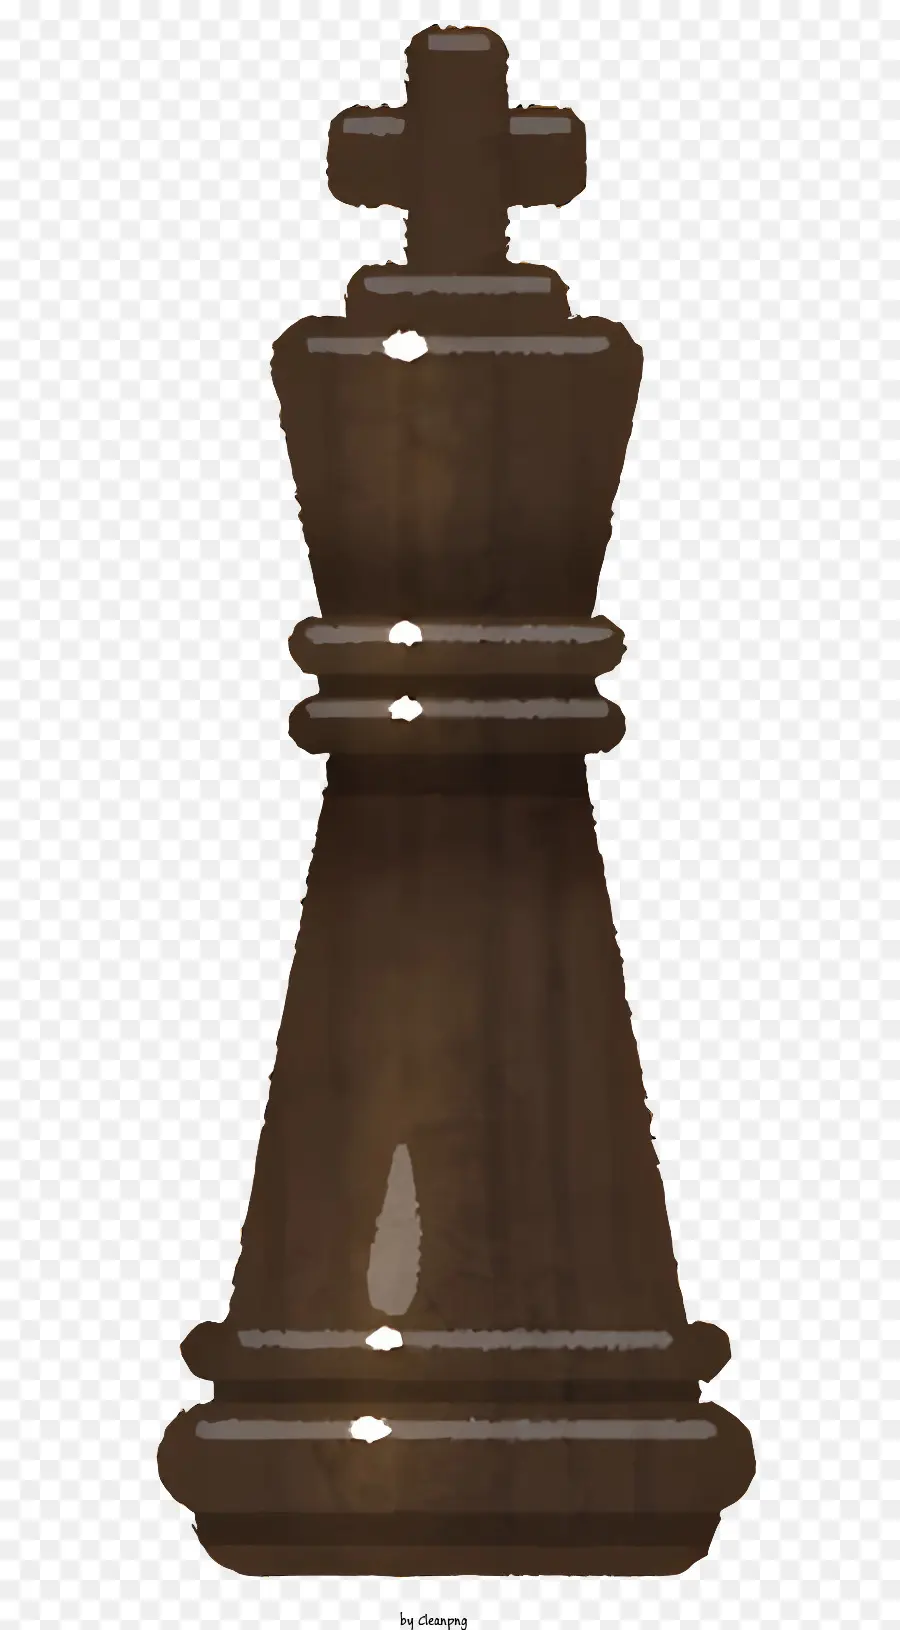 Dấu chân - Chữ cờ vua bằng gỗ với đầu vàng, sừng và chân hình X trên nền đen